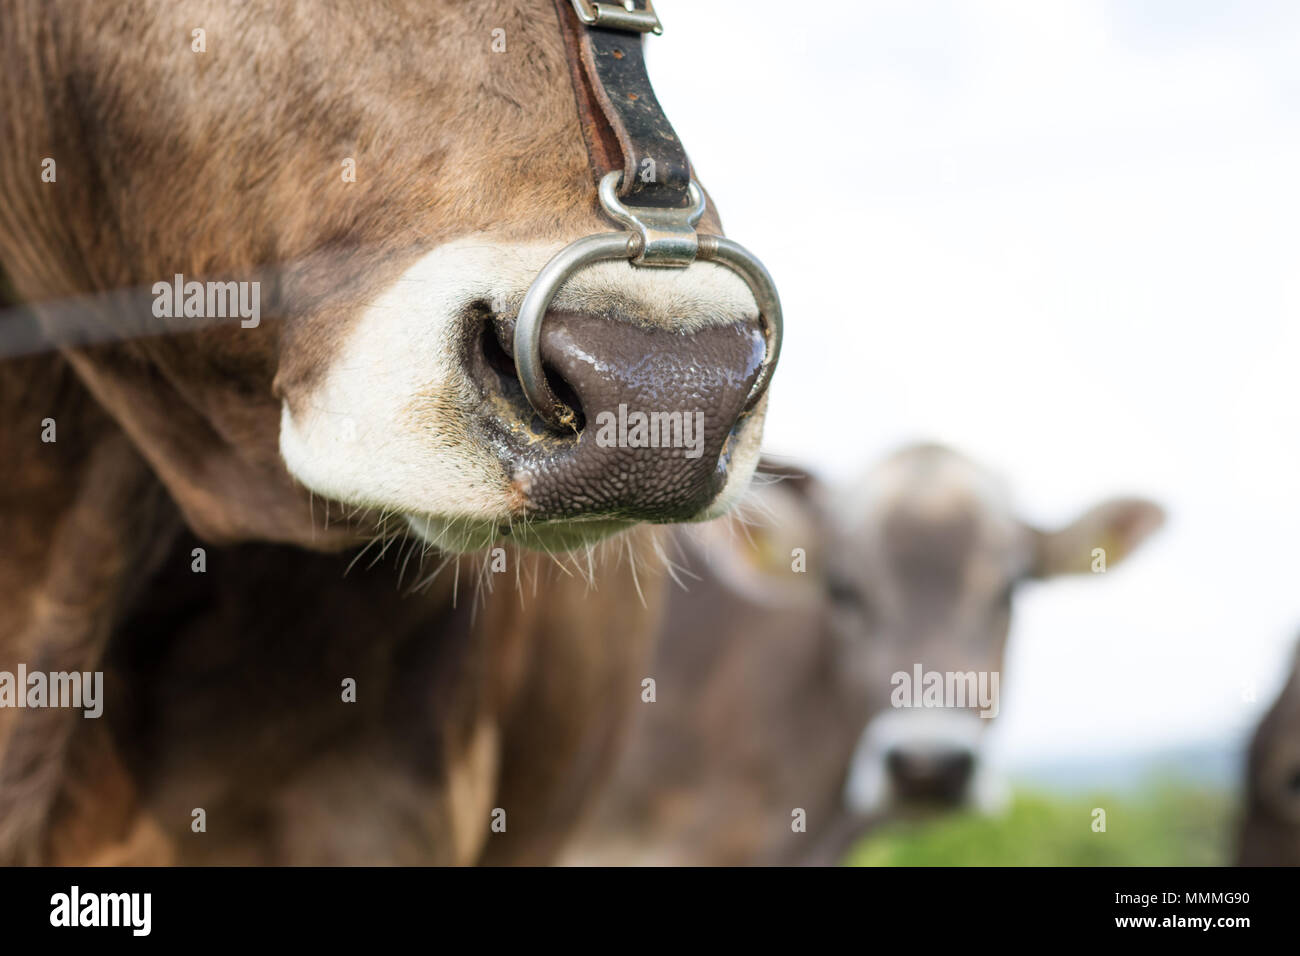 Nahaufnahme der Zunge von Kuh mit nasenring Stockfoto